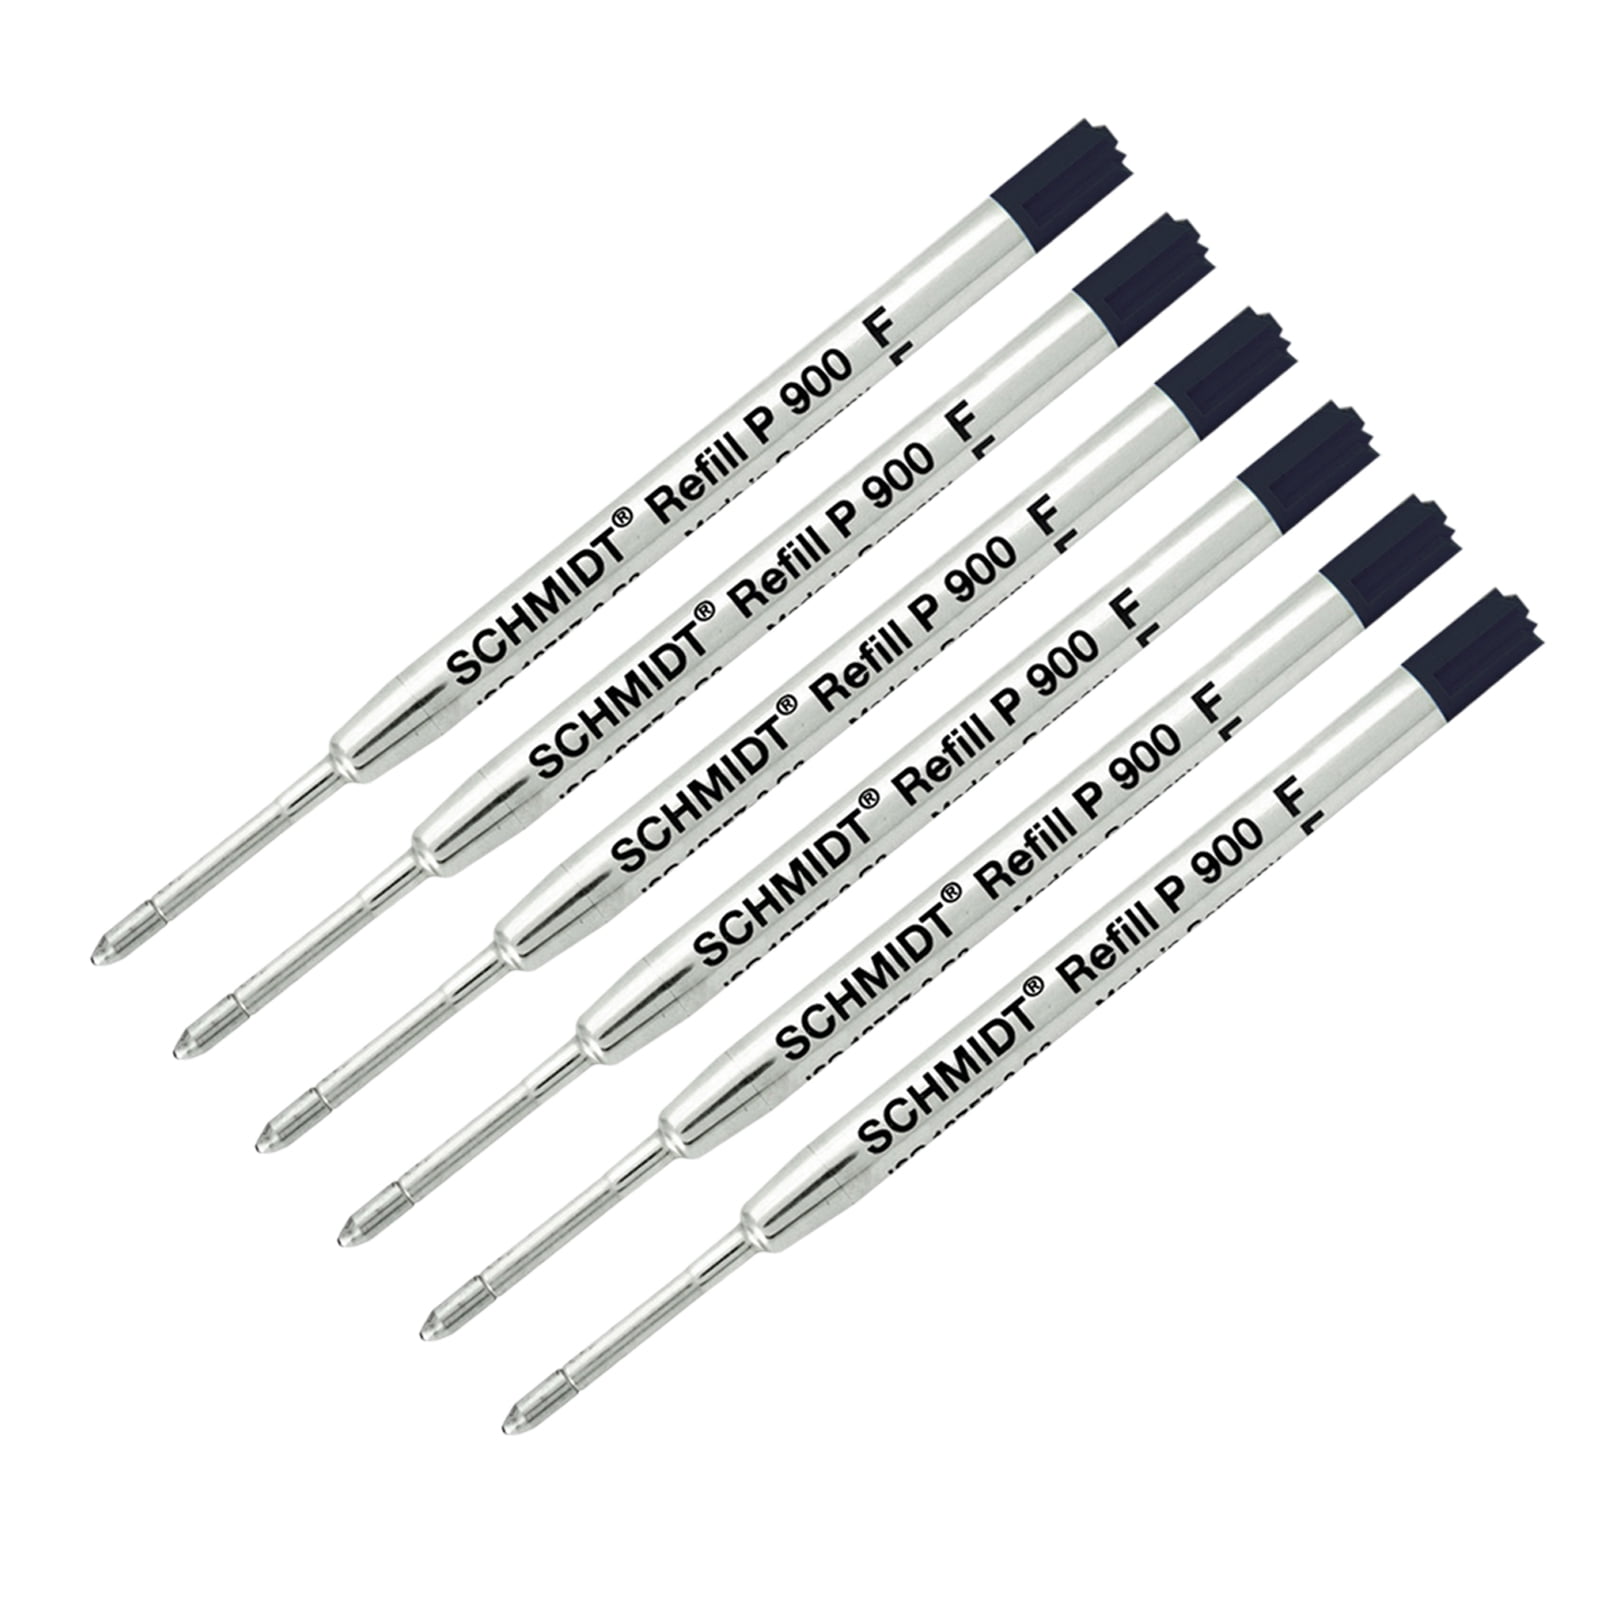 Black or Blue Parker G2 Style Ballpoint Pen Refills 1 10 5 15 